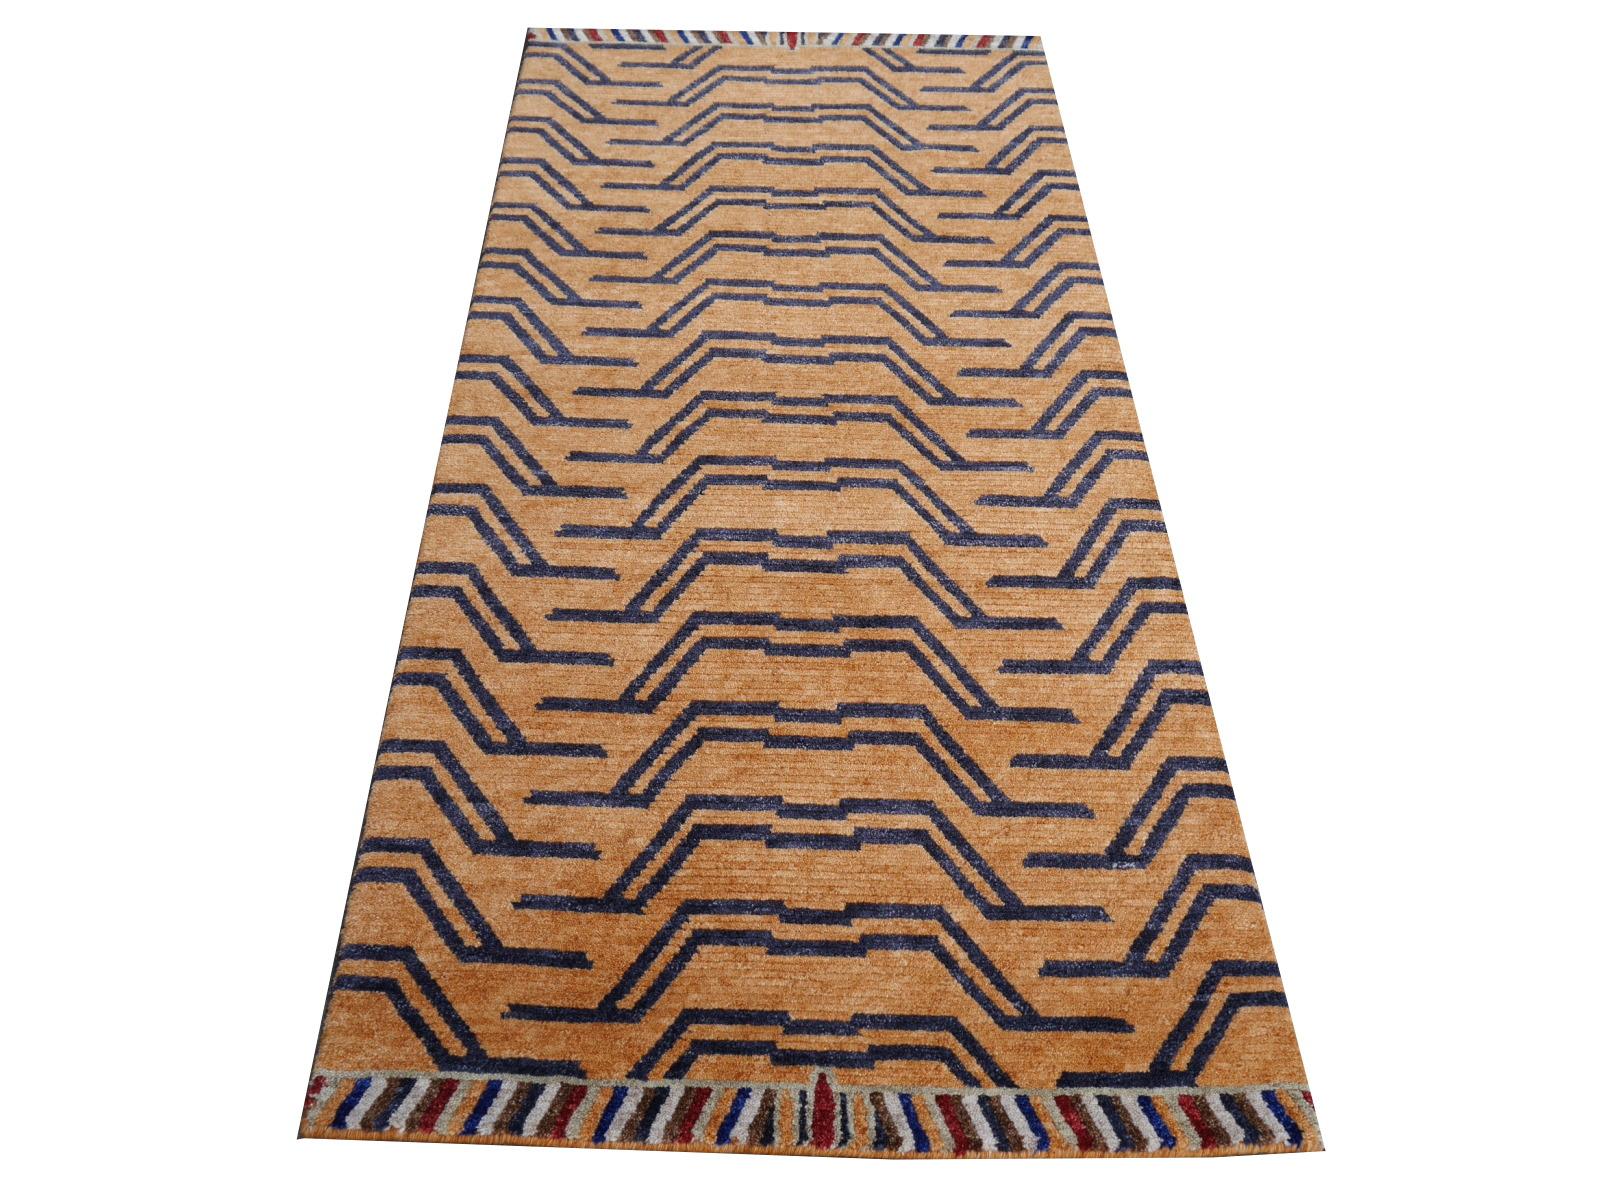 Un tapis tigré tibétain, noué à la main au Népal.

Ce motif traditionnel de tapis tigre se trouve généralement sur des tapis anciens appelés Khaden. Il s'agit d'un tapis de petite taille, d'environ 3 x 6 pieds, qui était utilisé au Tibet pour